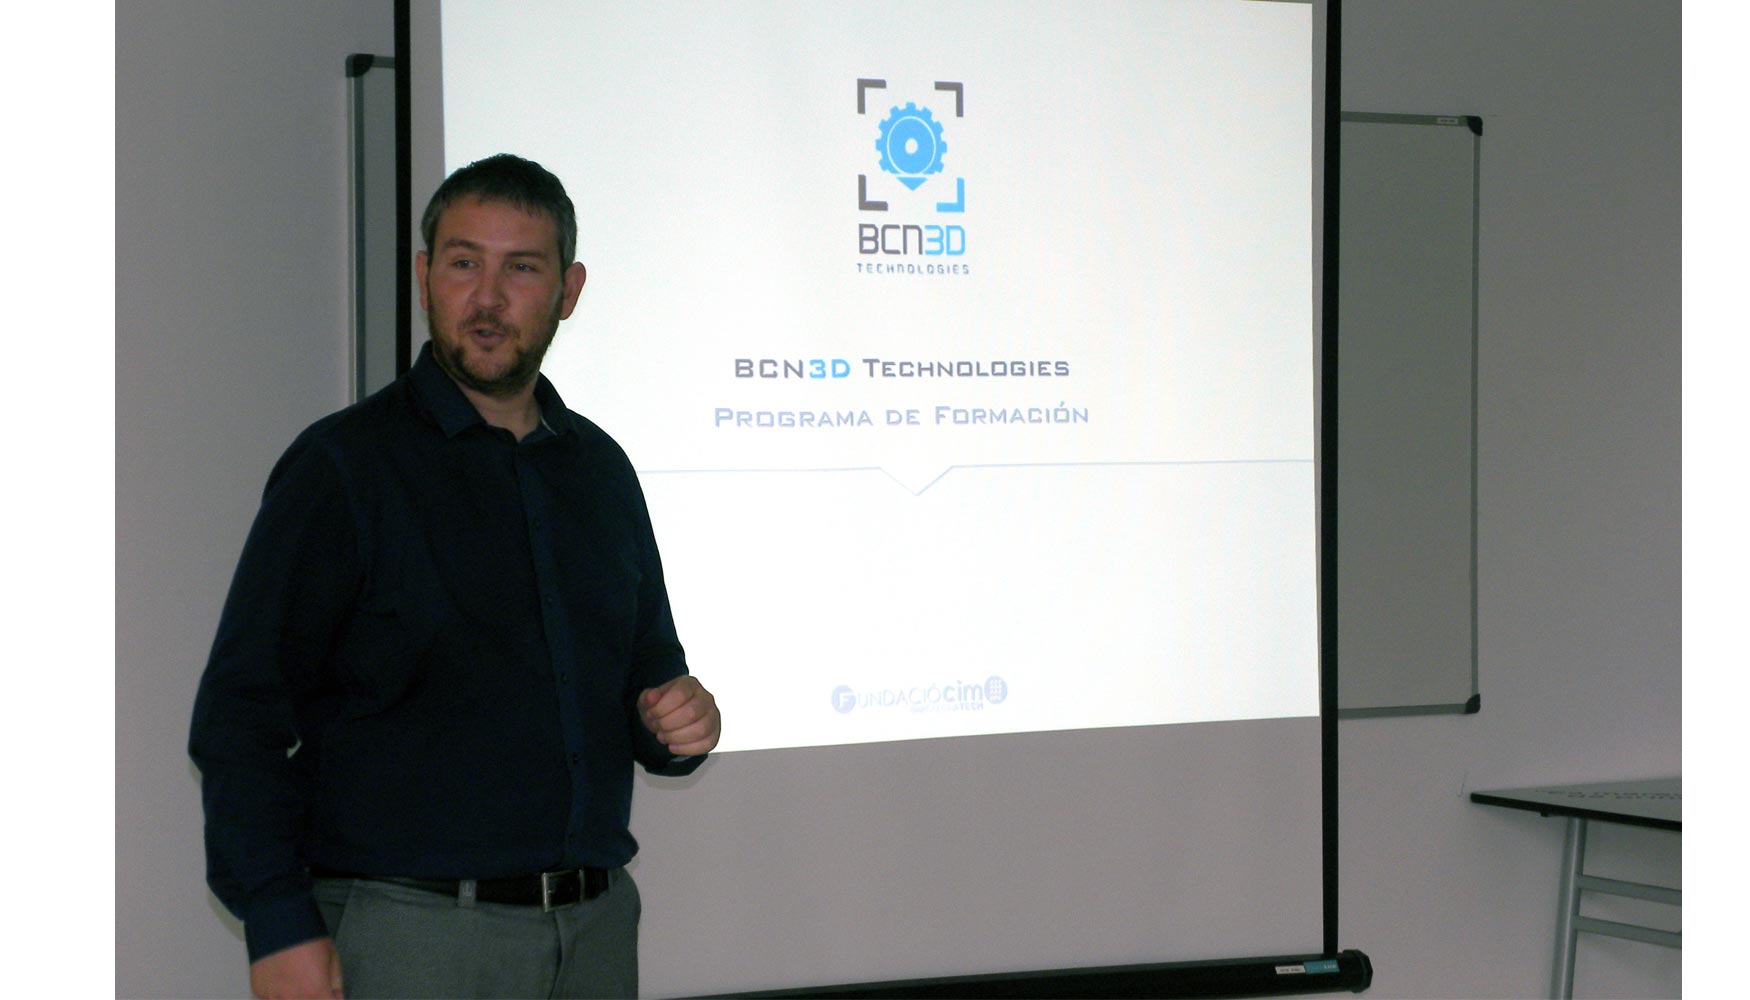 Roger Uceda, CEO en BCN3D Technologies, expuso las nuevas tecnologas en que estn trabajando